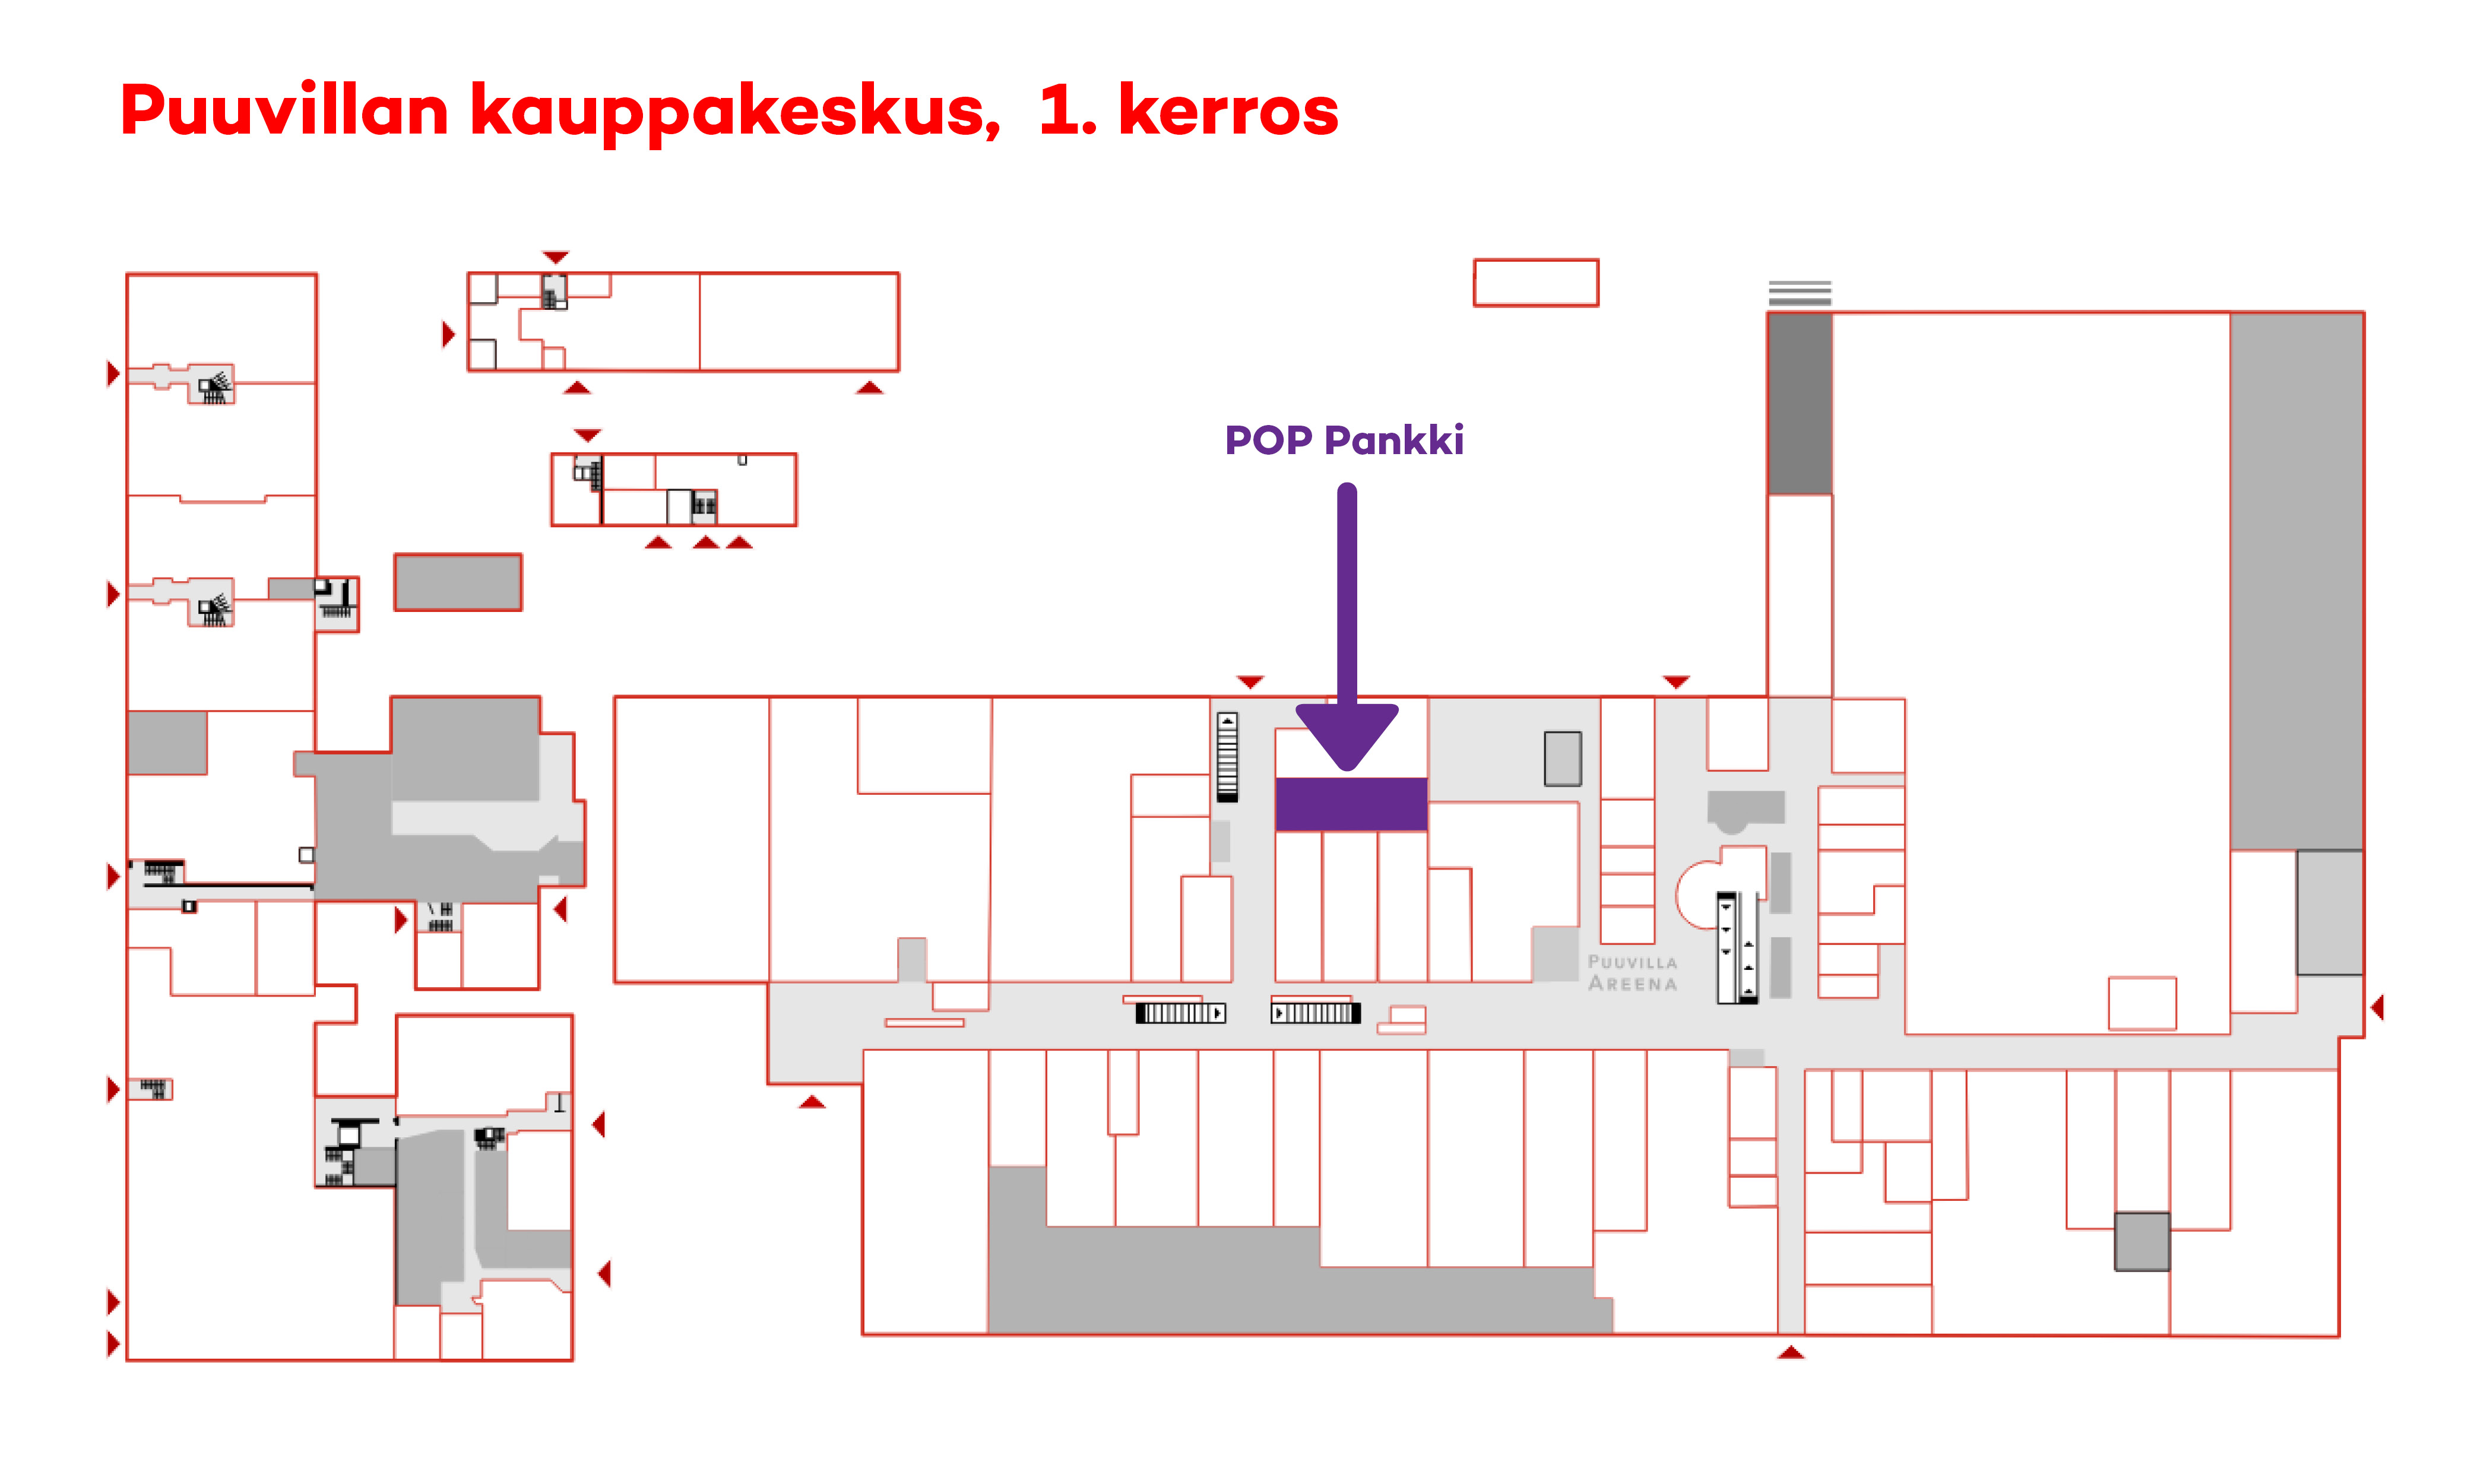 Piirroskartta POP Pankin sijainnista Puuvillan kauppakeskuksessa.